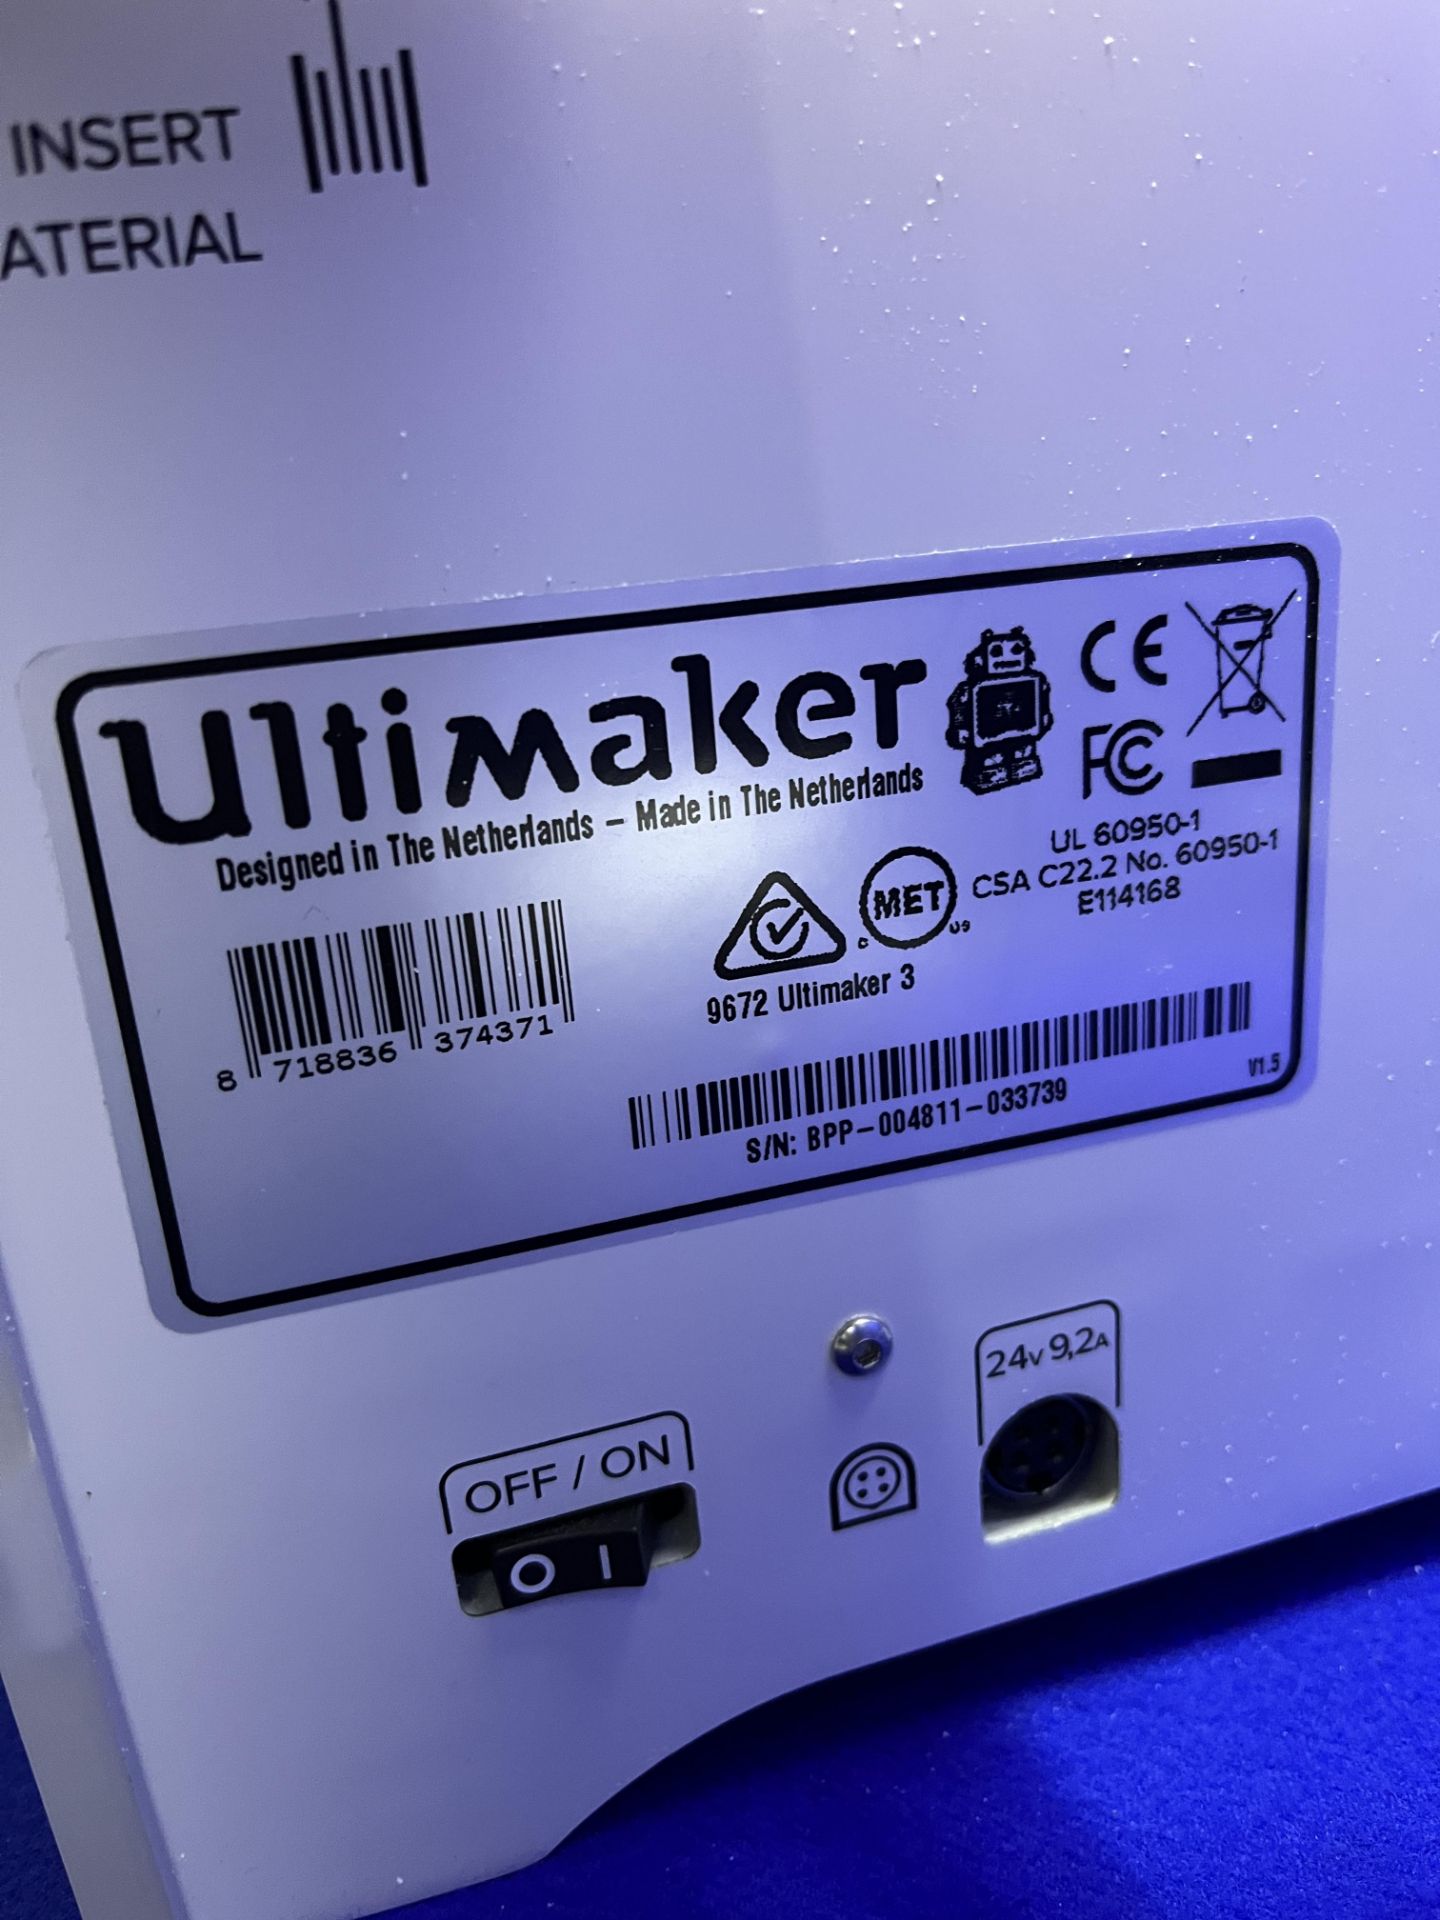 Ultimaker Model 3 3D printer - Image 5 of 5